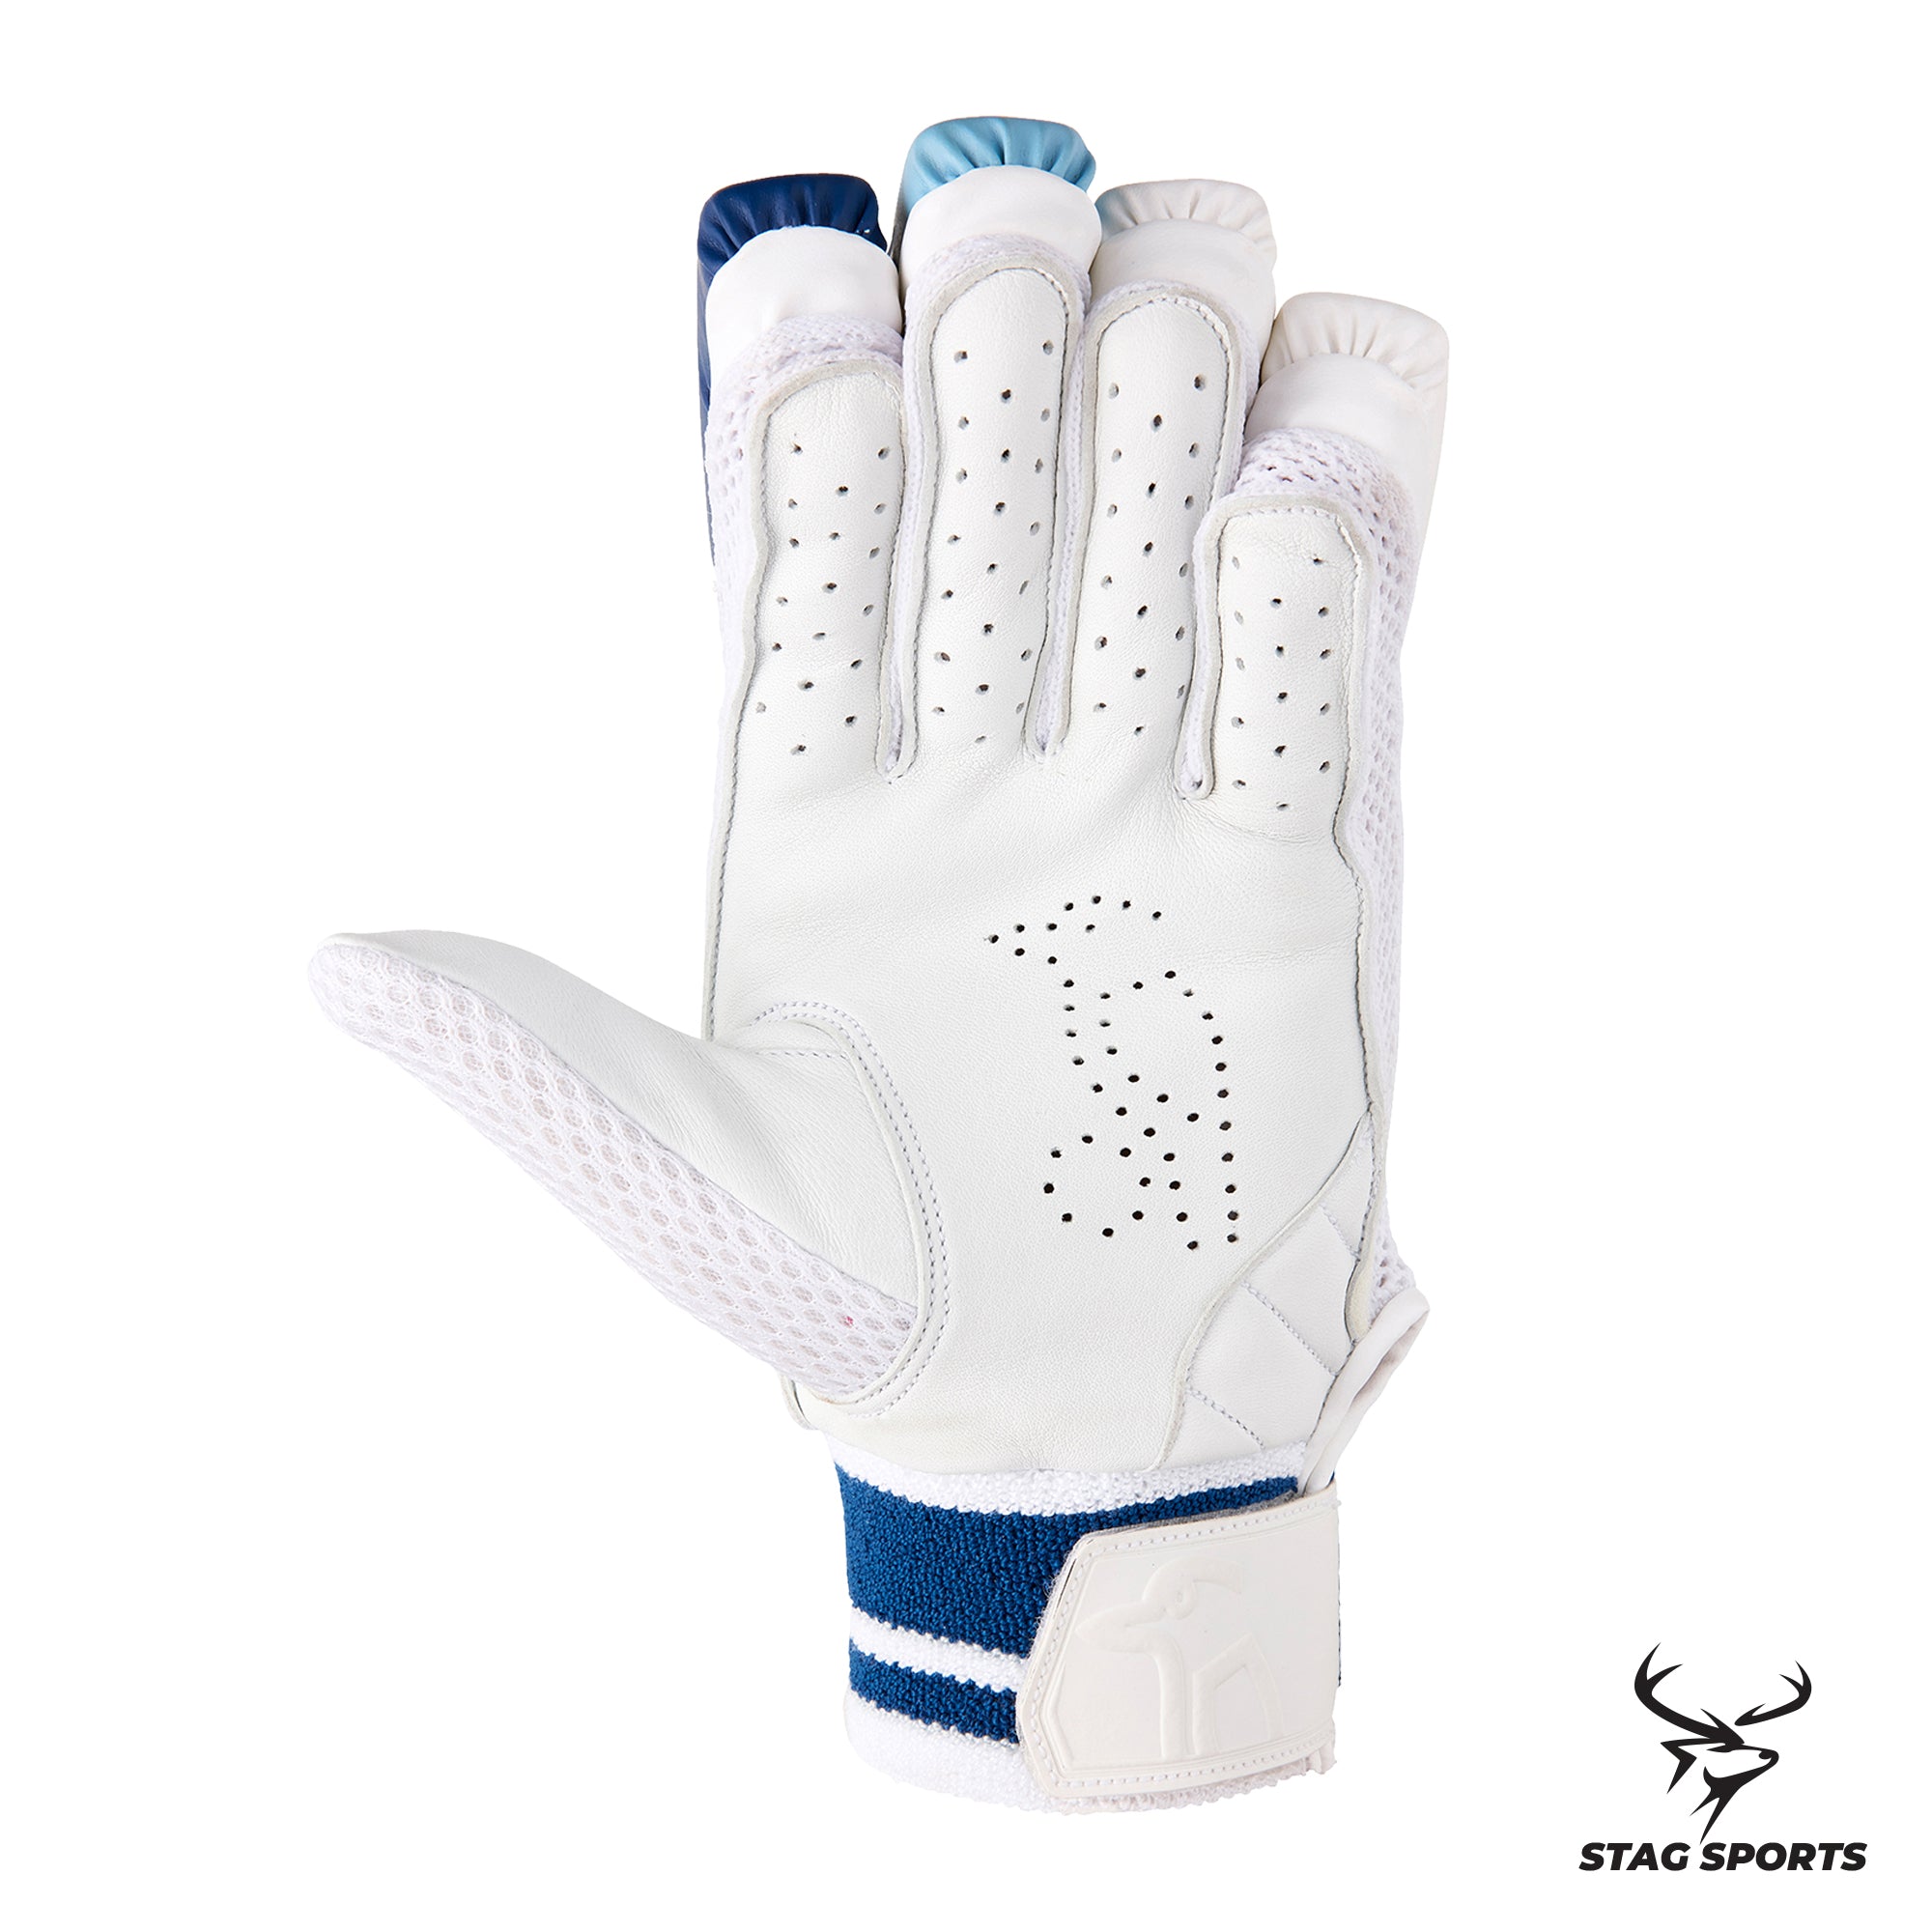 Kookaburra Empower Pro 3.0 Cricket batting Gloves